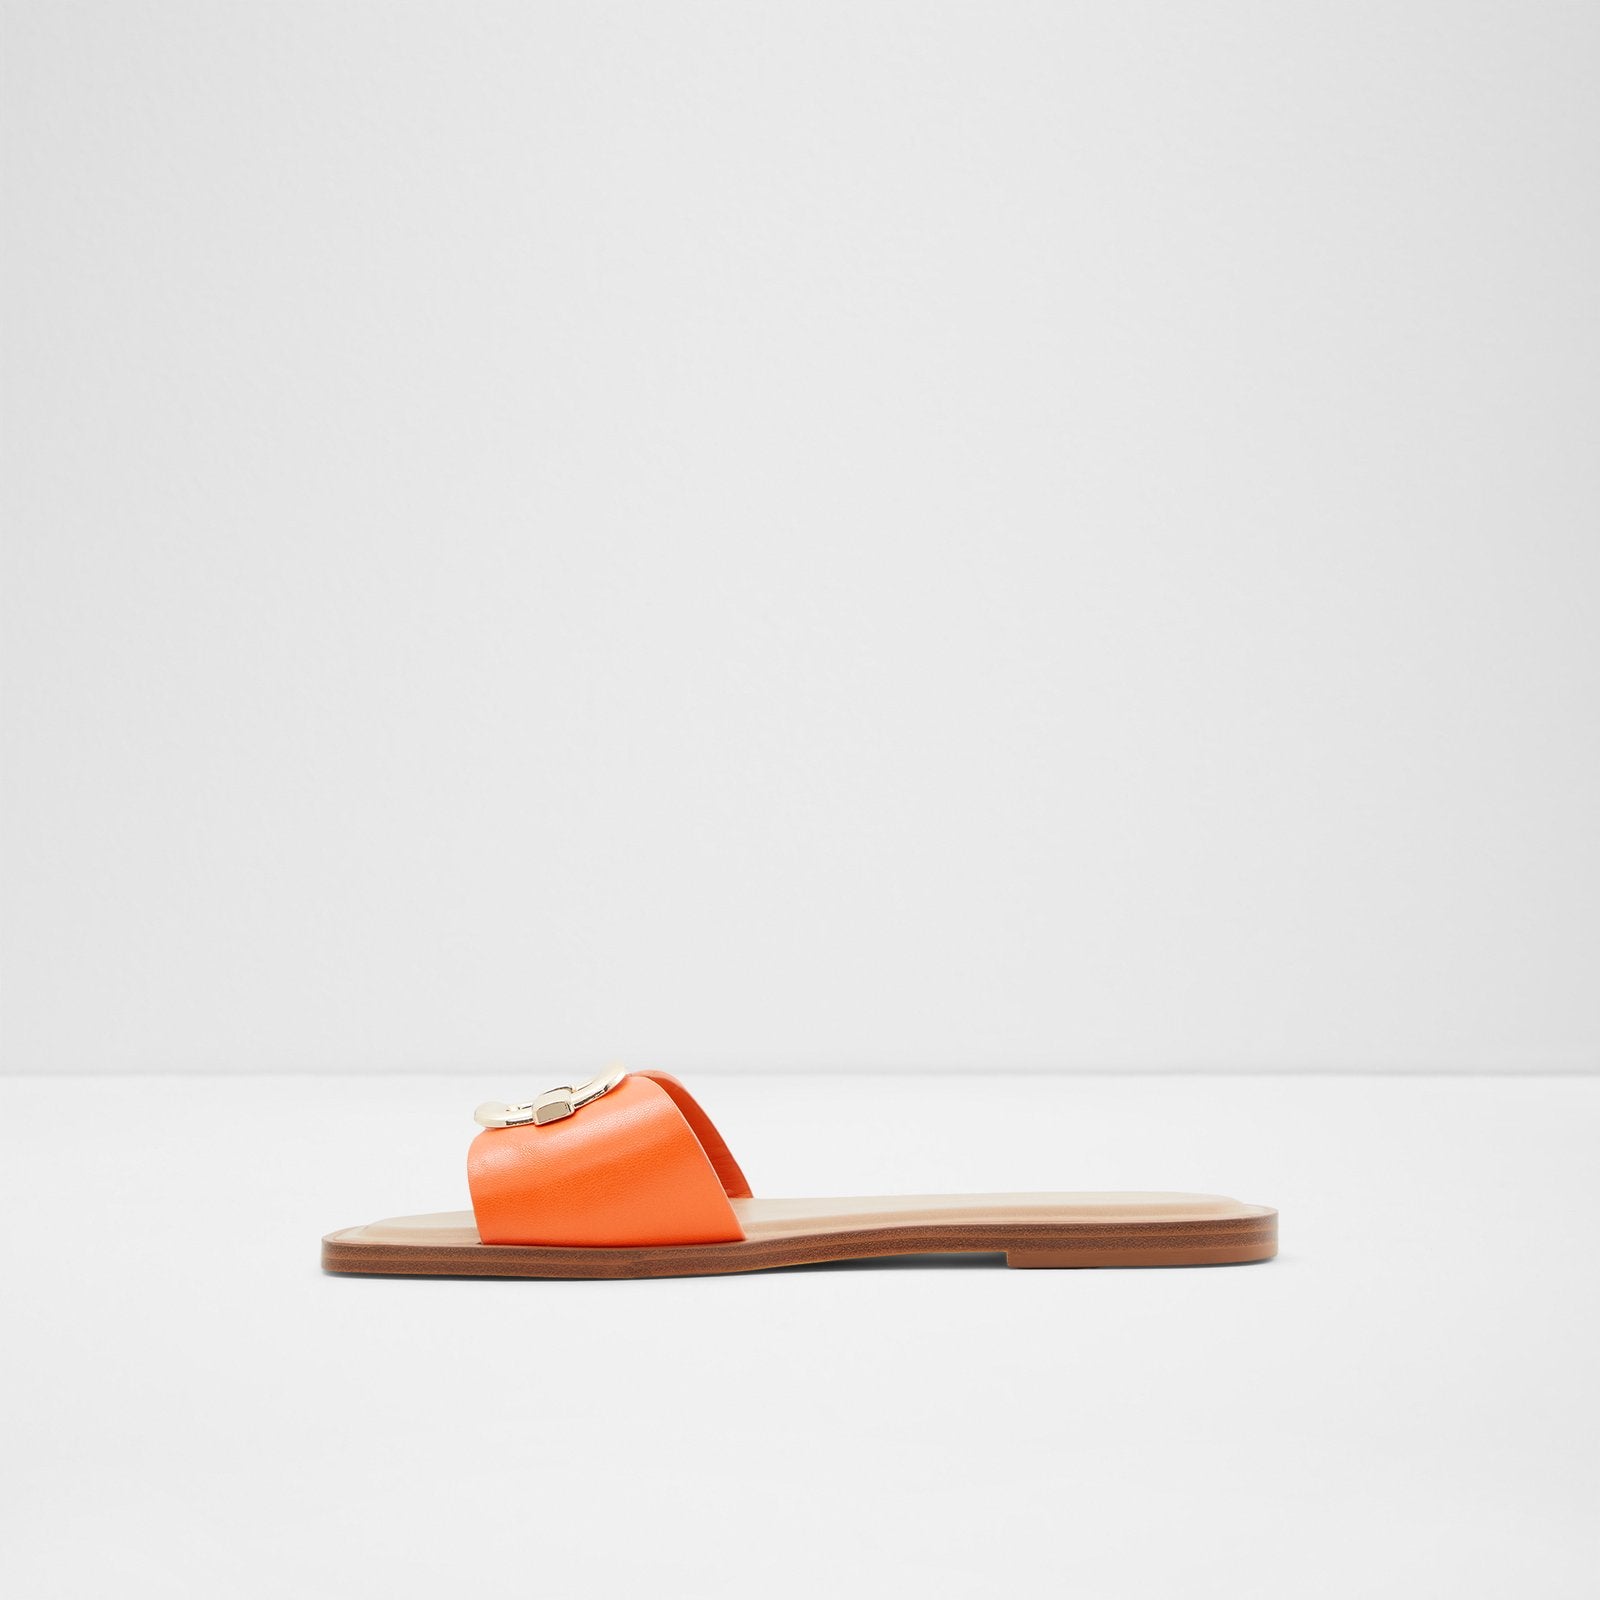 Glaeswen Women Shoes - Orange - ALDO KSA